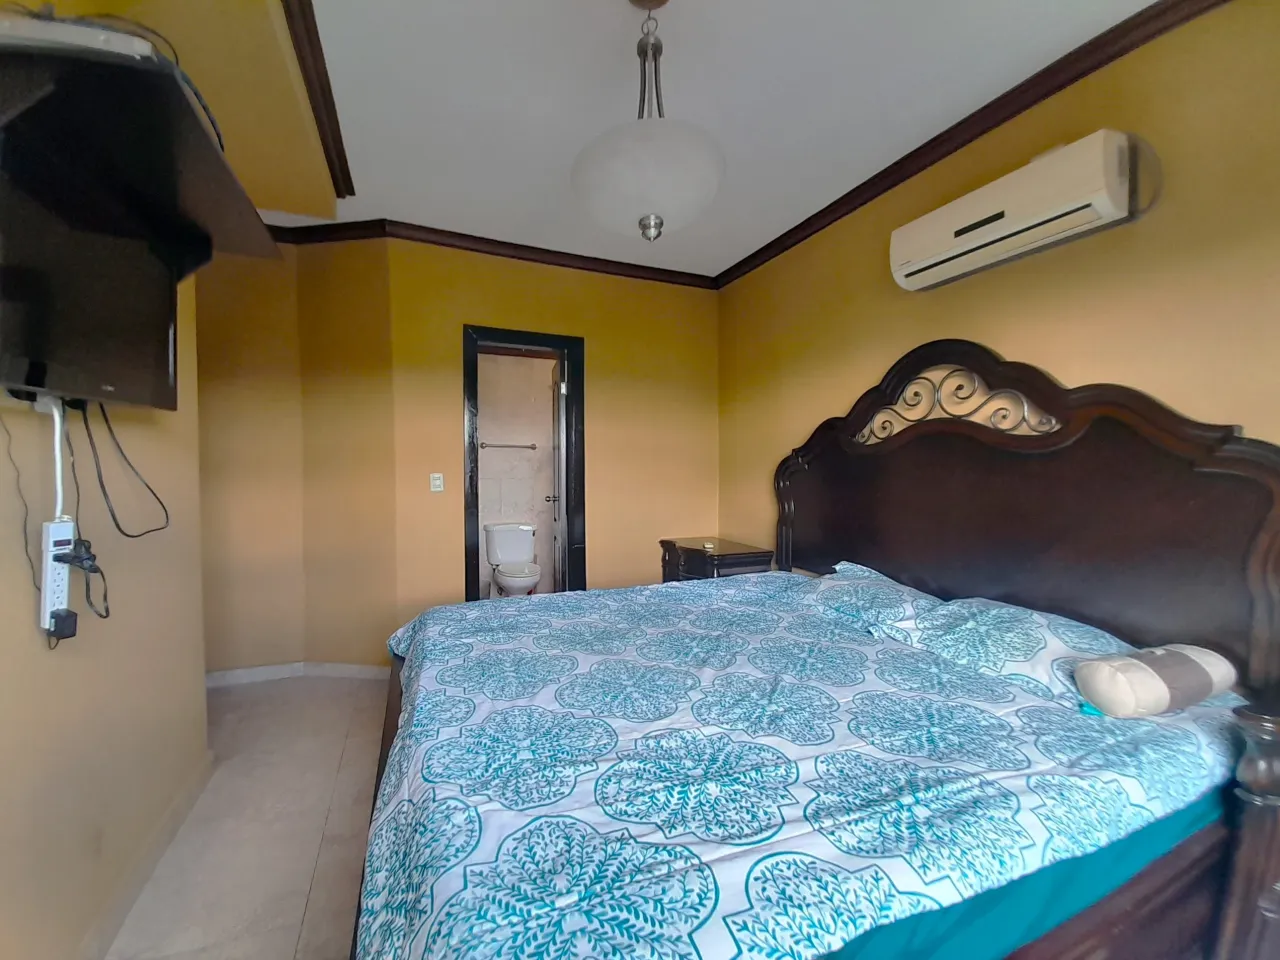 Una de las habitaciones cuenta con una cama matrimonial, aire acondicionado, baño privado, paredes de color amarillo, televisor colgado en la pared.